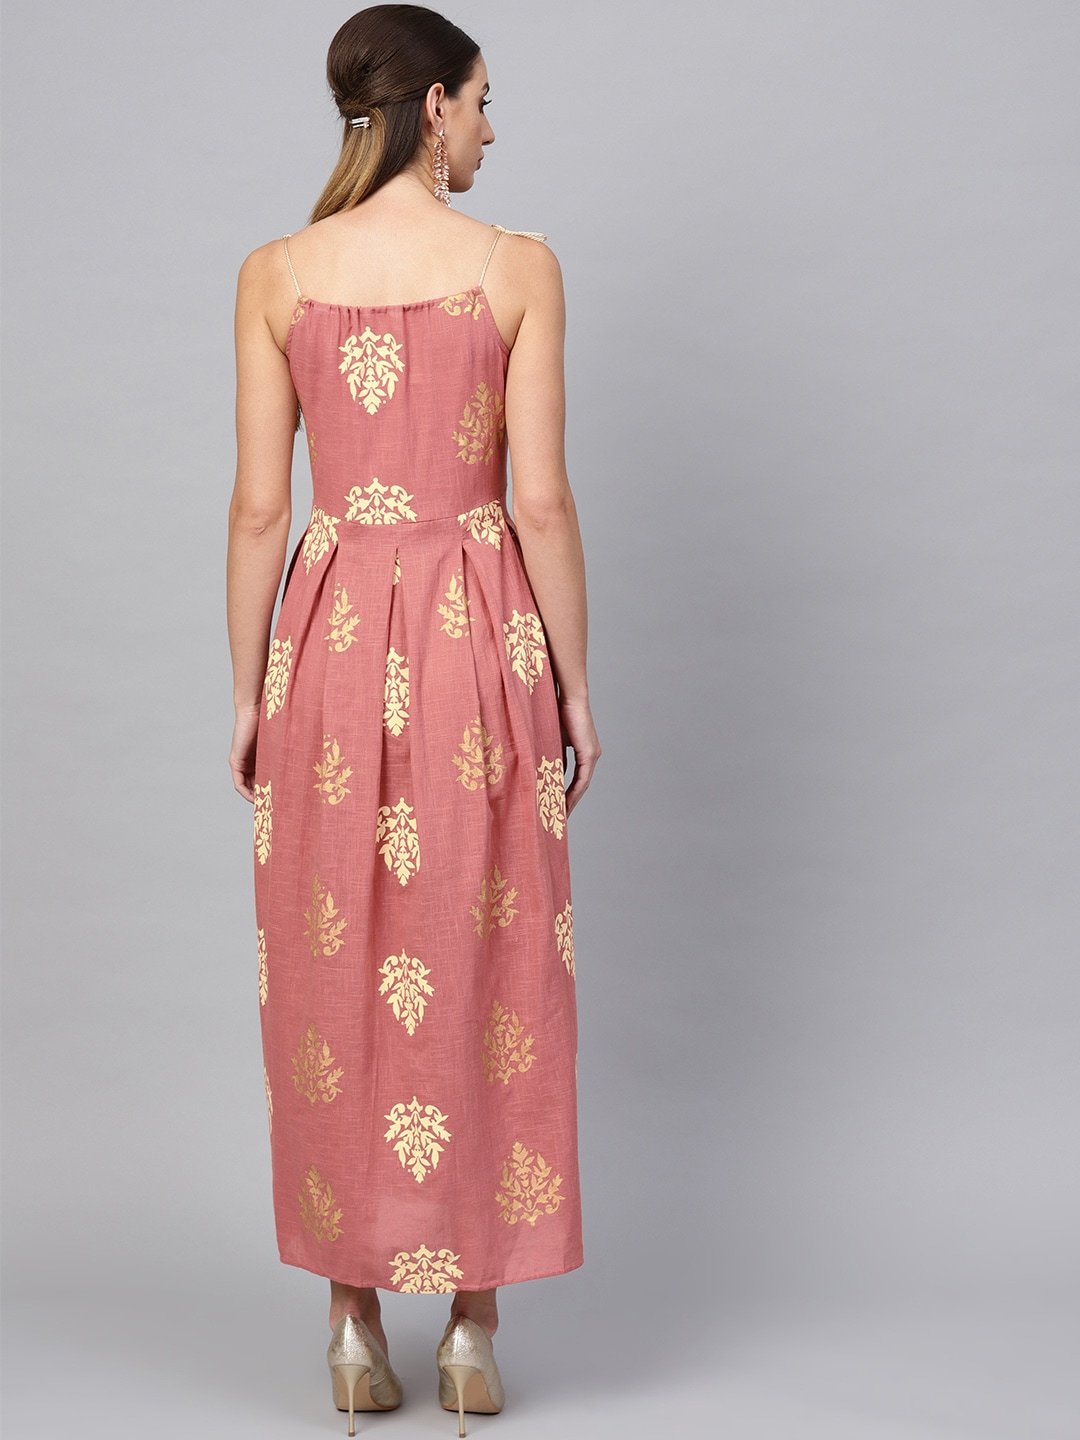 Women's  Pink & Golden Printed Maxi Dress - AKS